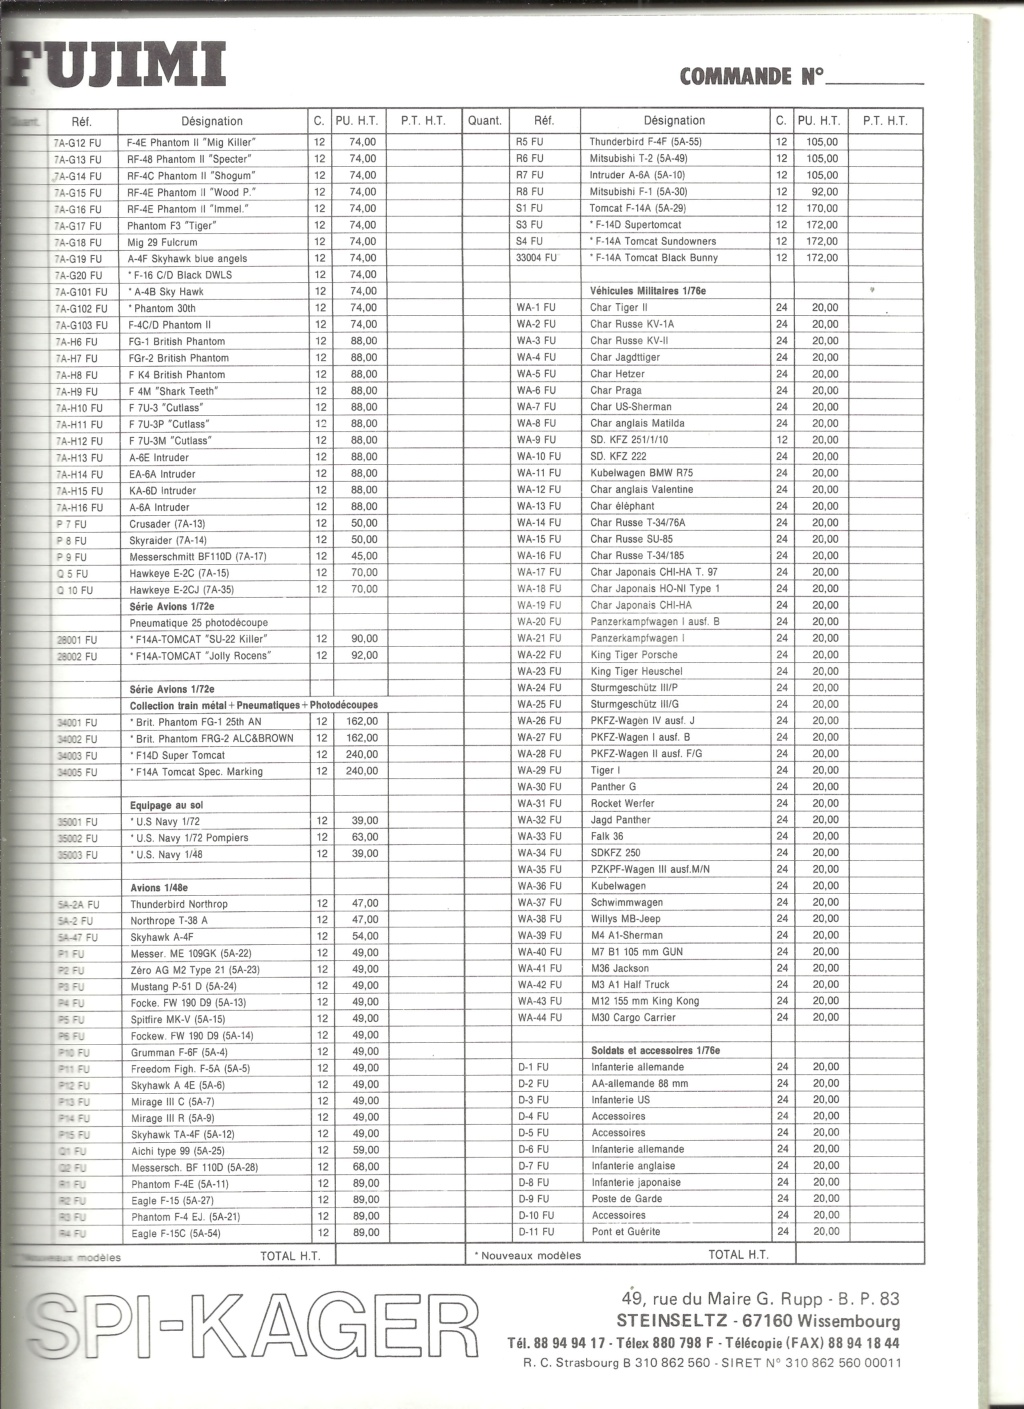 [SPI KAGER 1989] Bon de commande et tarif revendeur 1989  Spi_ka30